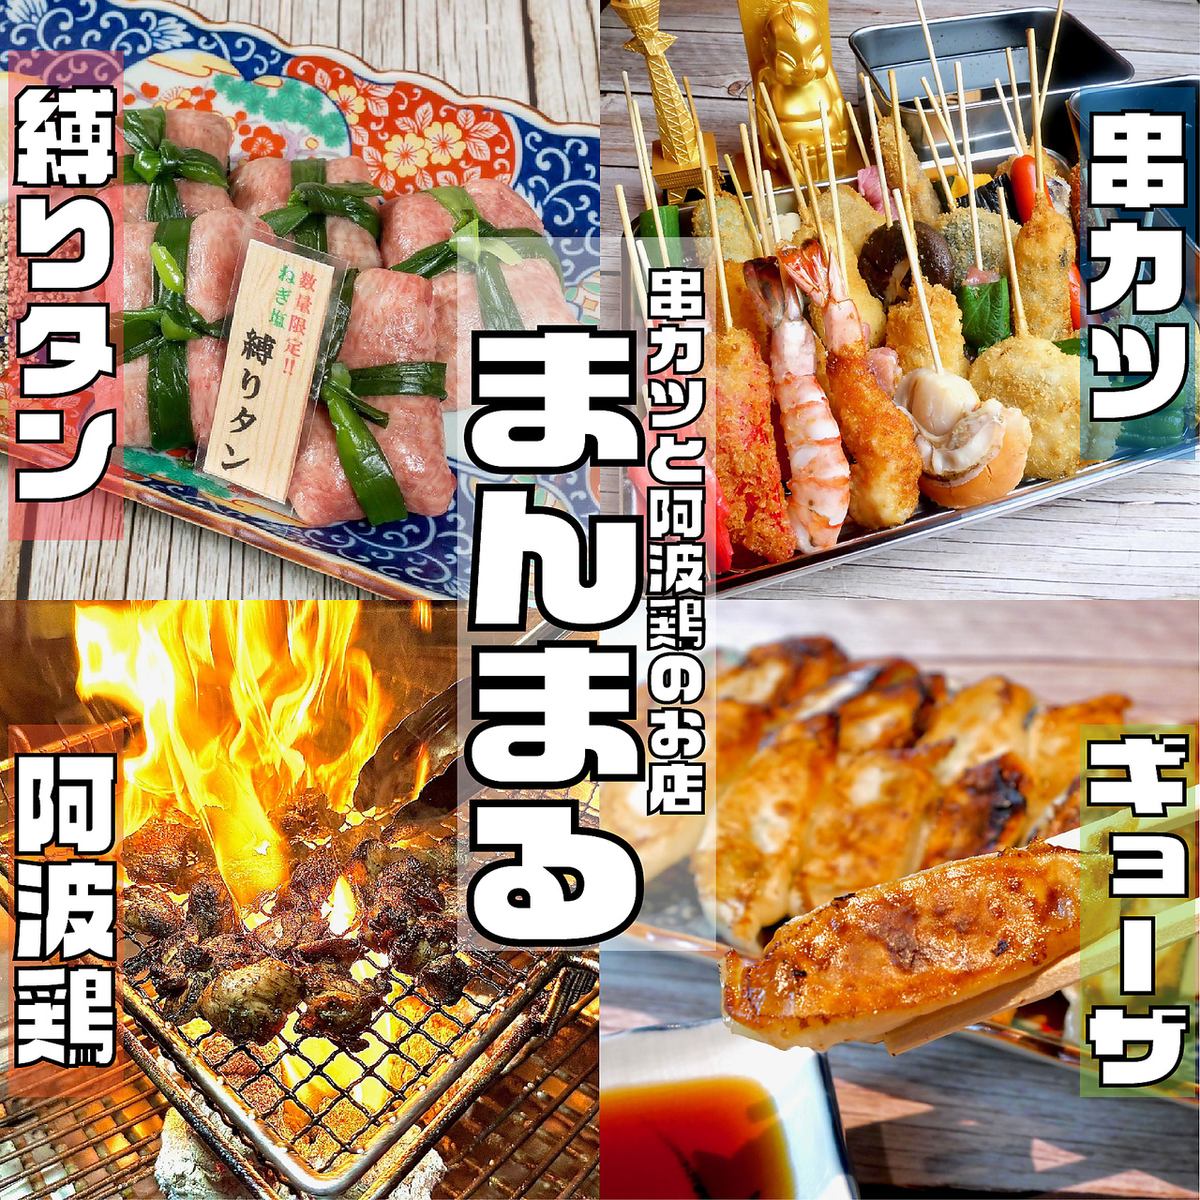 도쿠시마 번화가의 아키타초에 자리한 숯불구이 닭과 고기 초밥, 꼬치가를 즐길 수 있는 코스파◎의 가게